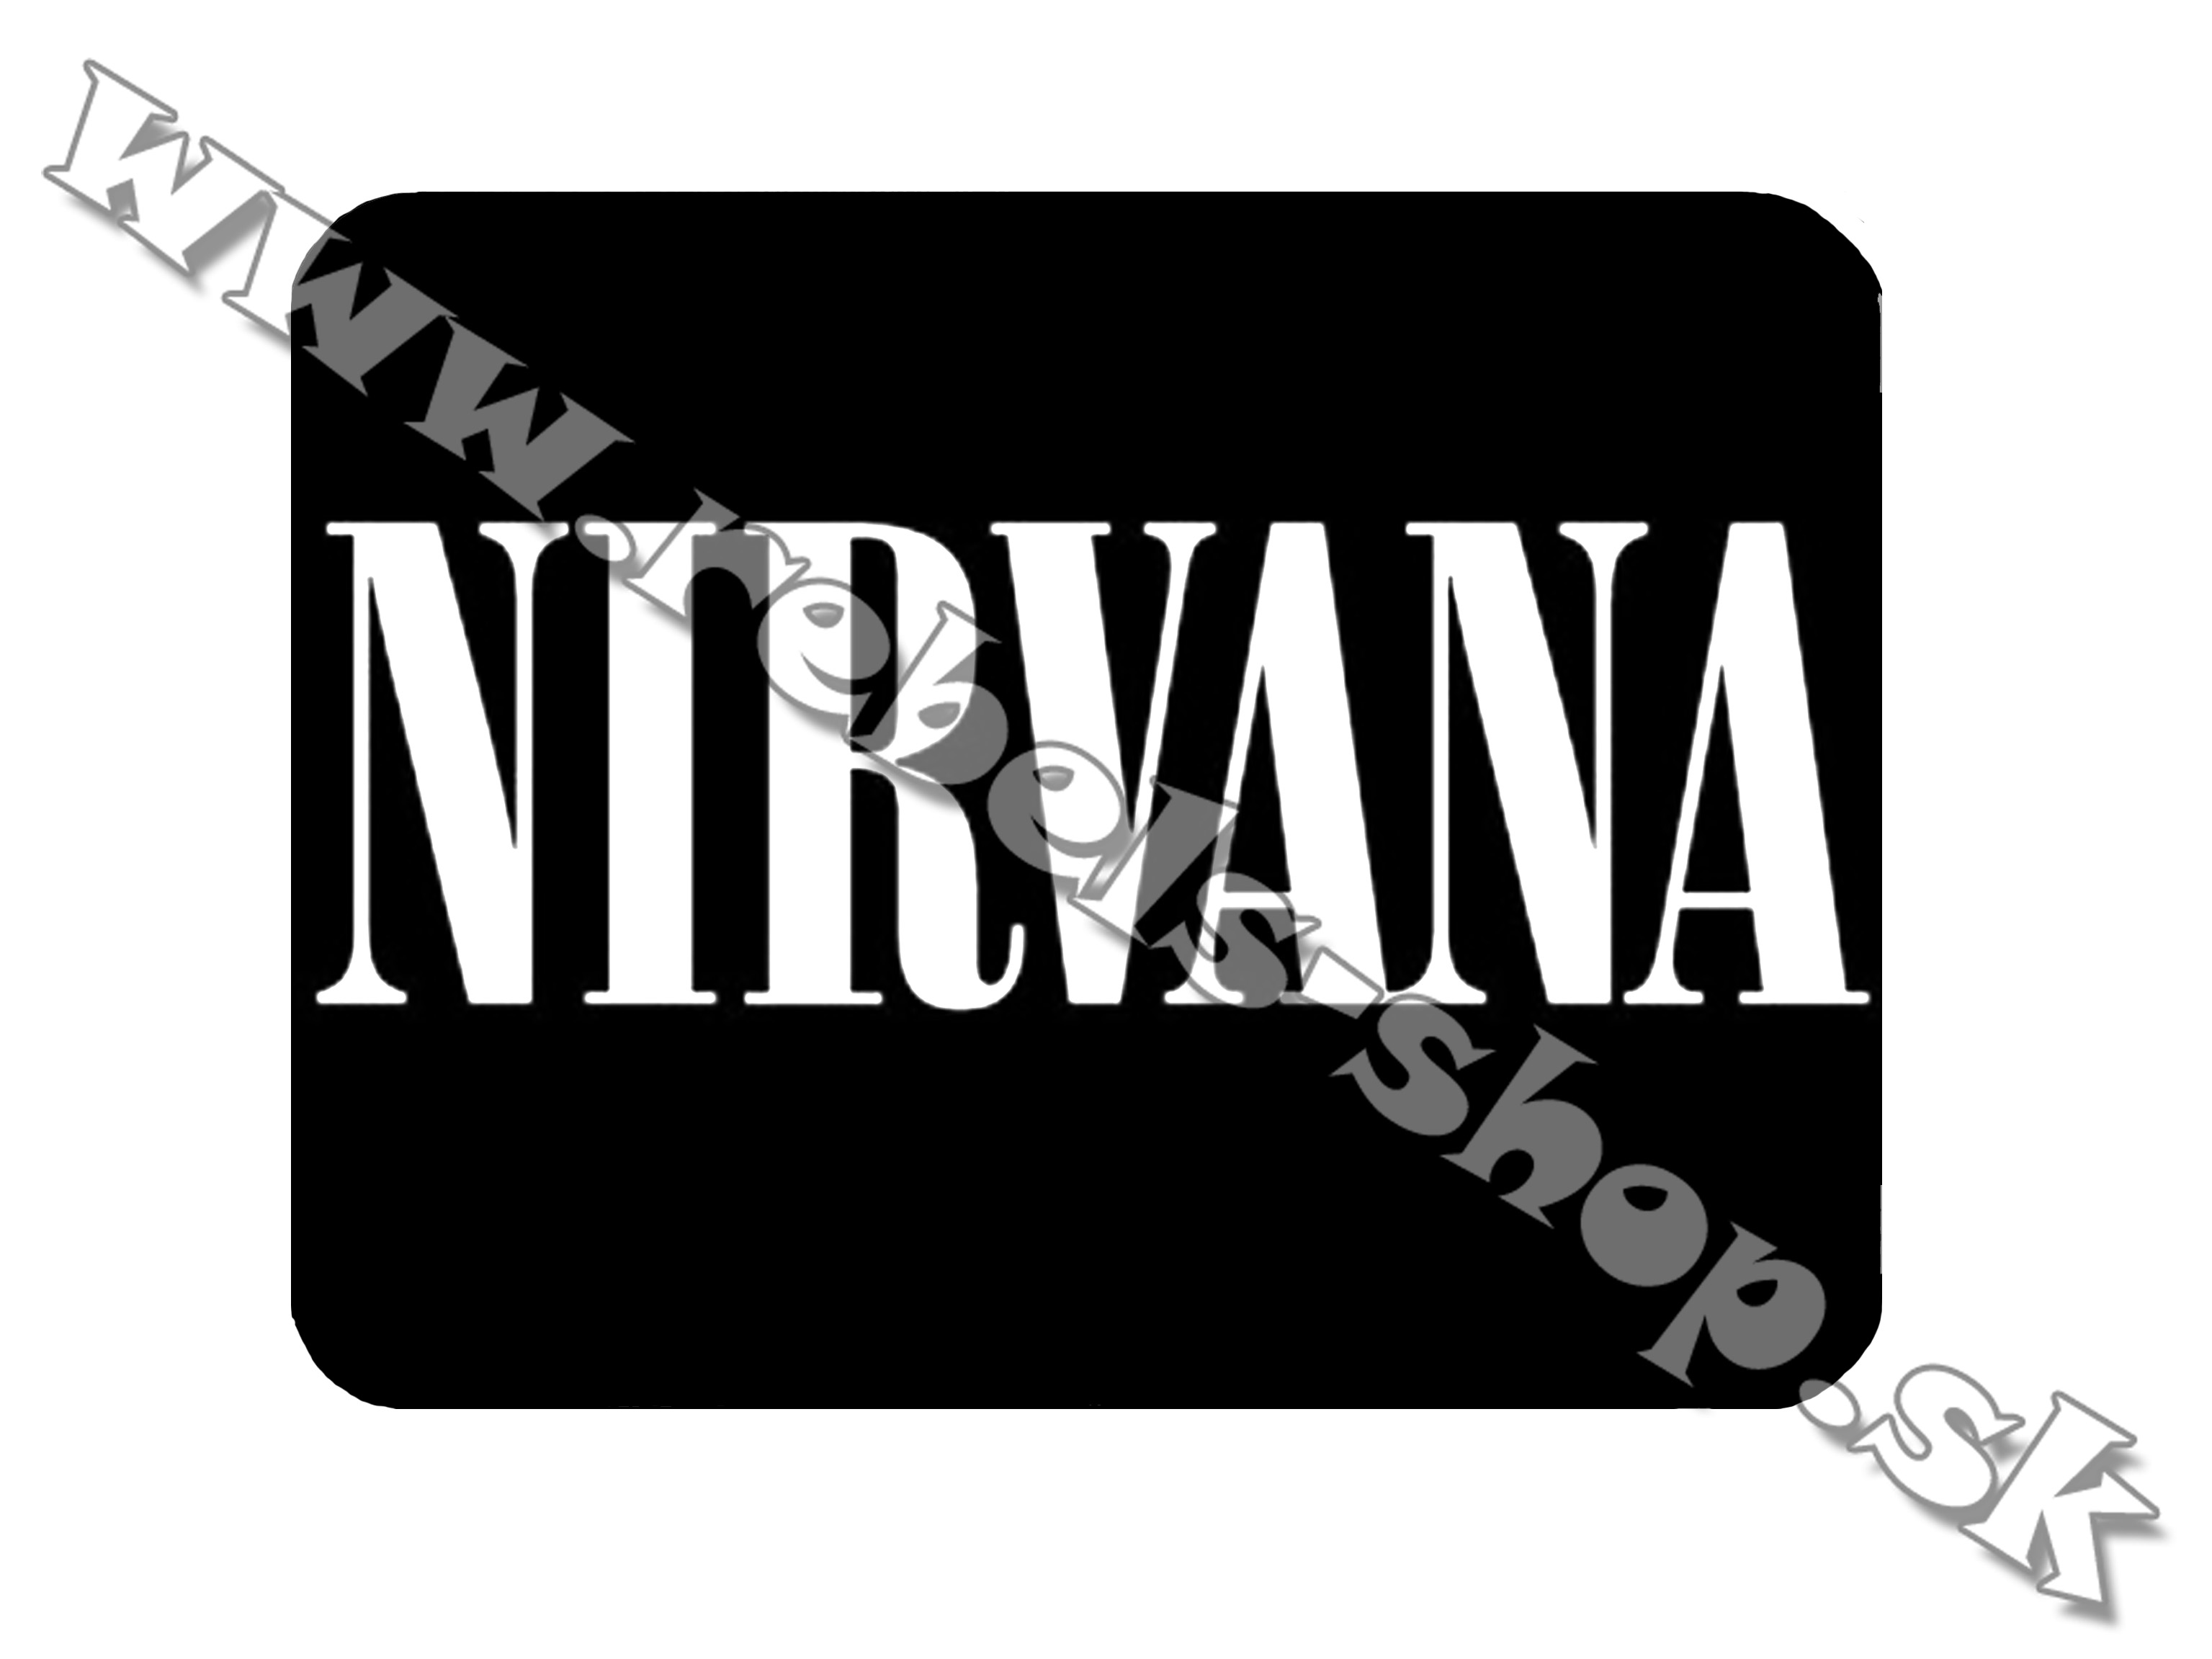 Podložka pod myš  "Nirvana"